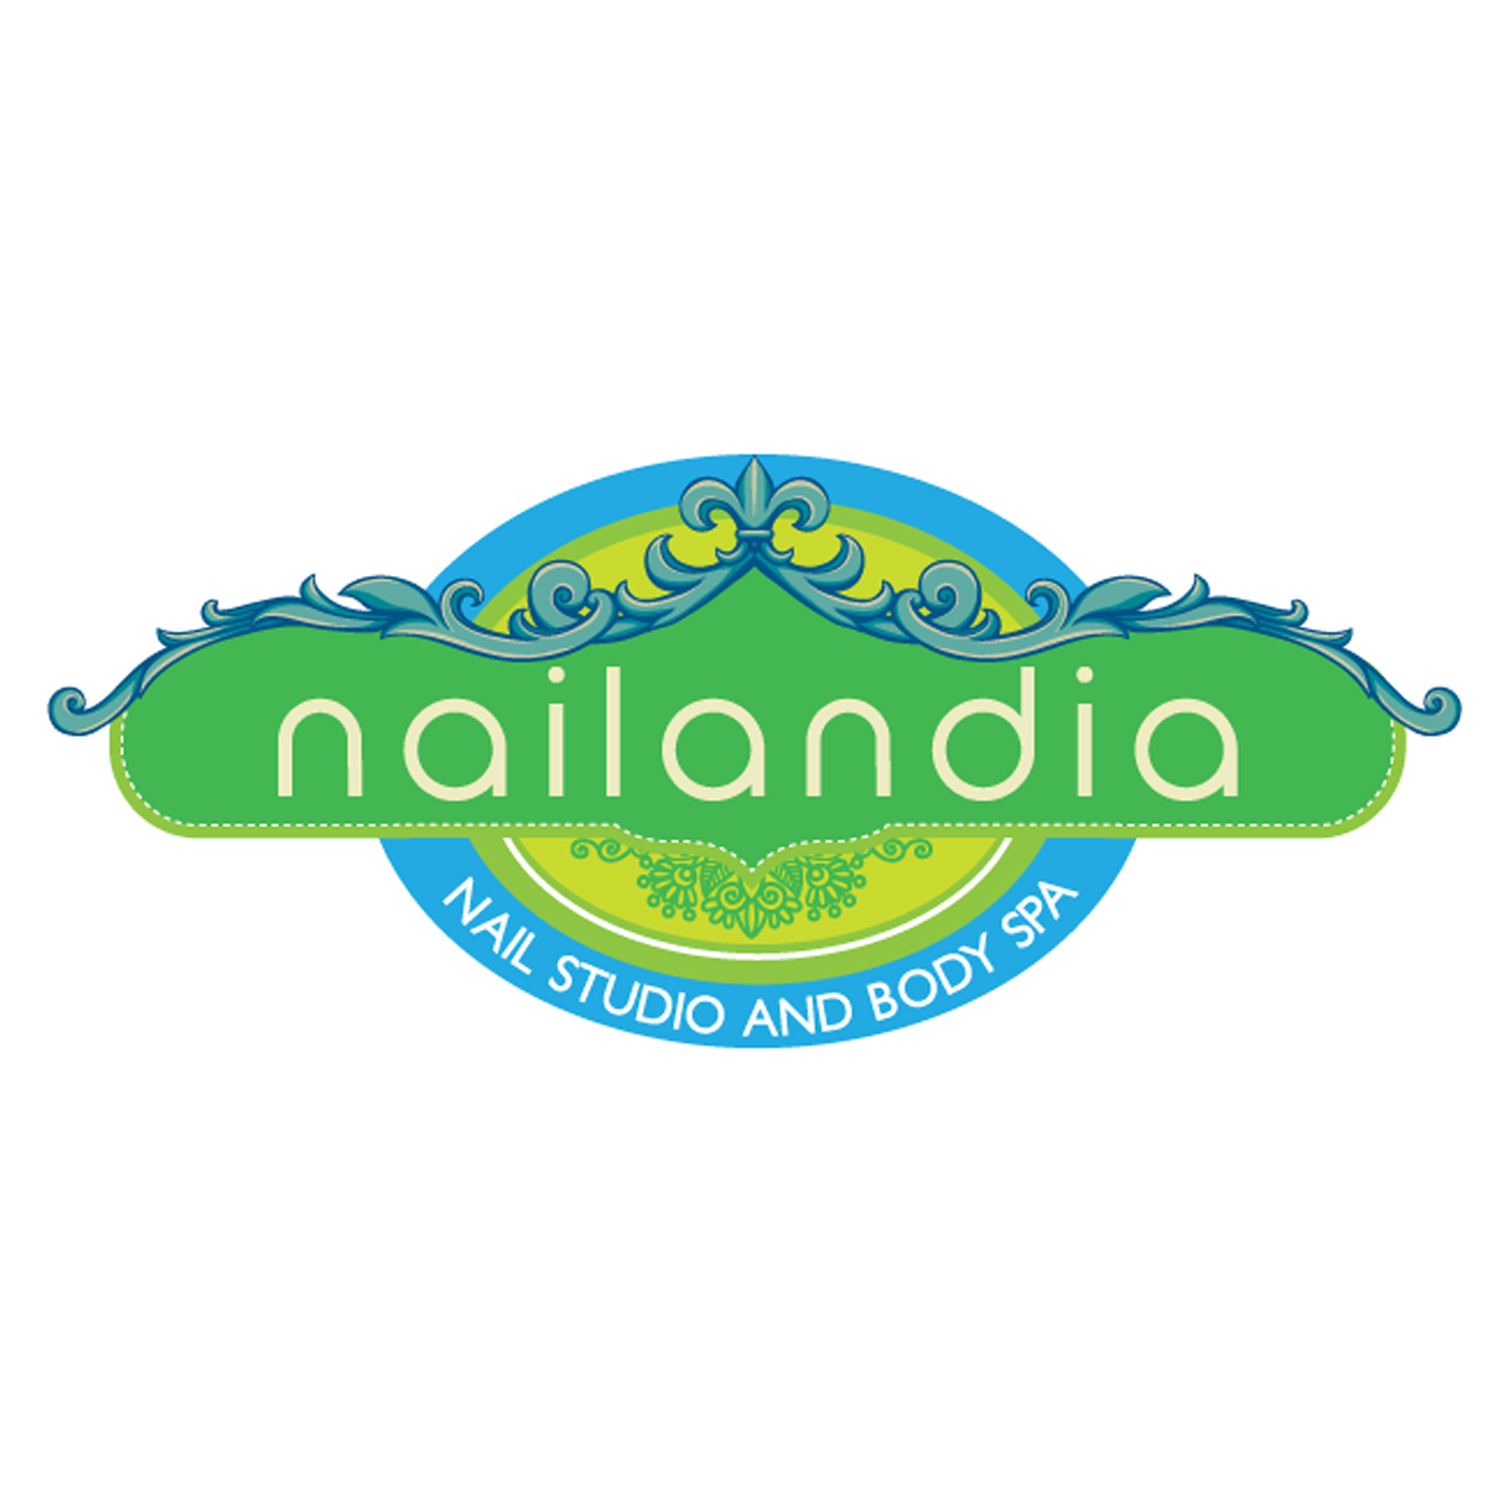 Nailandia - Araneta City